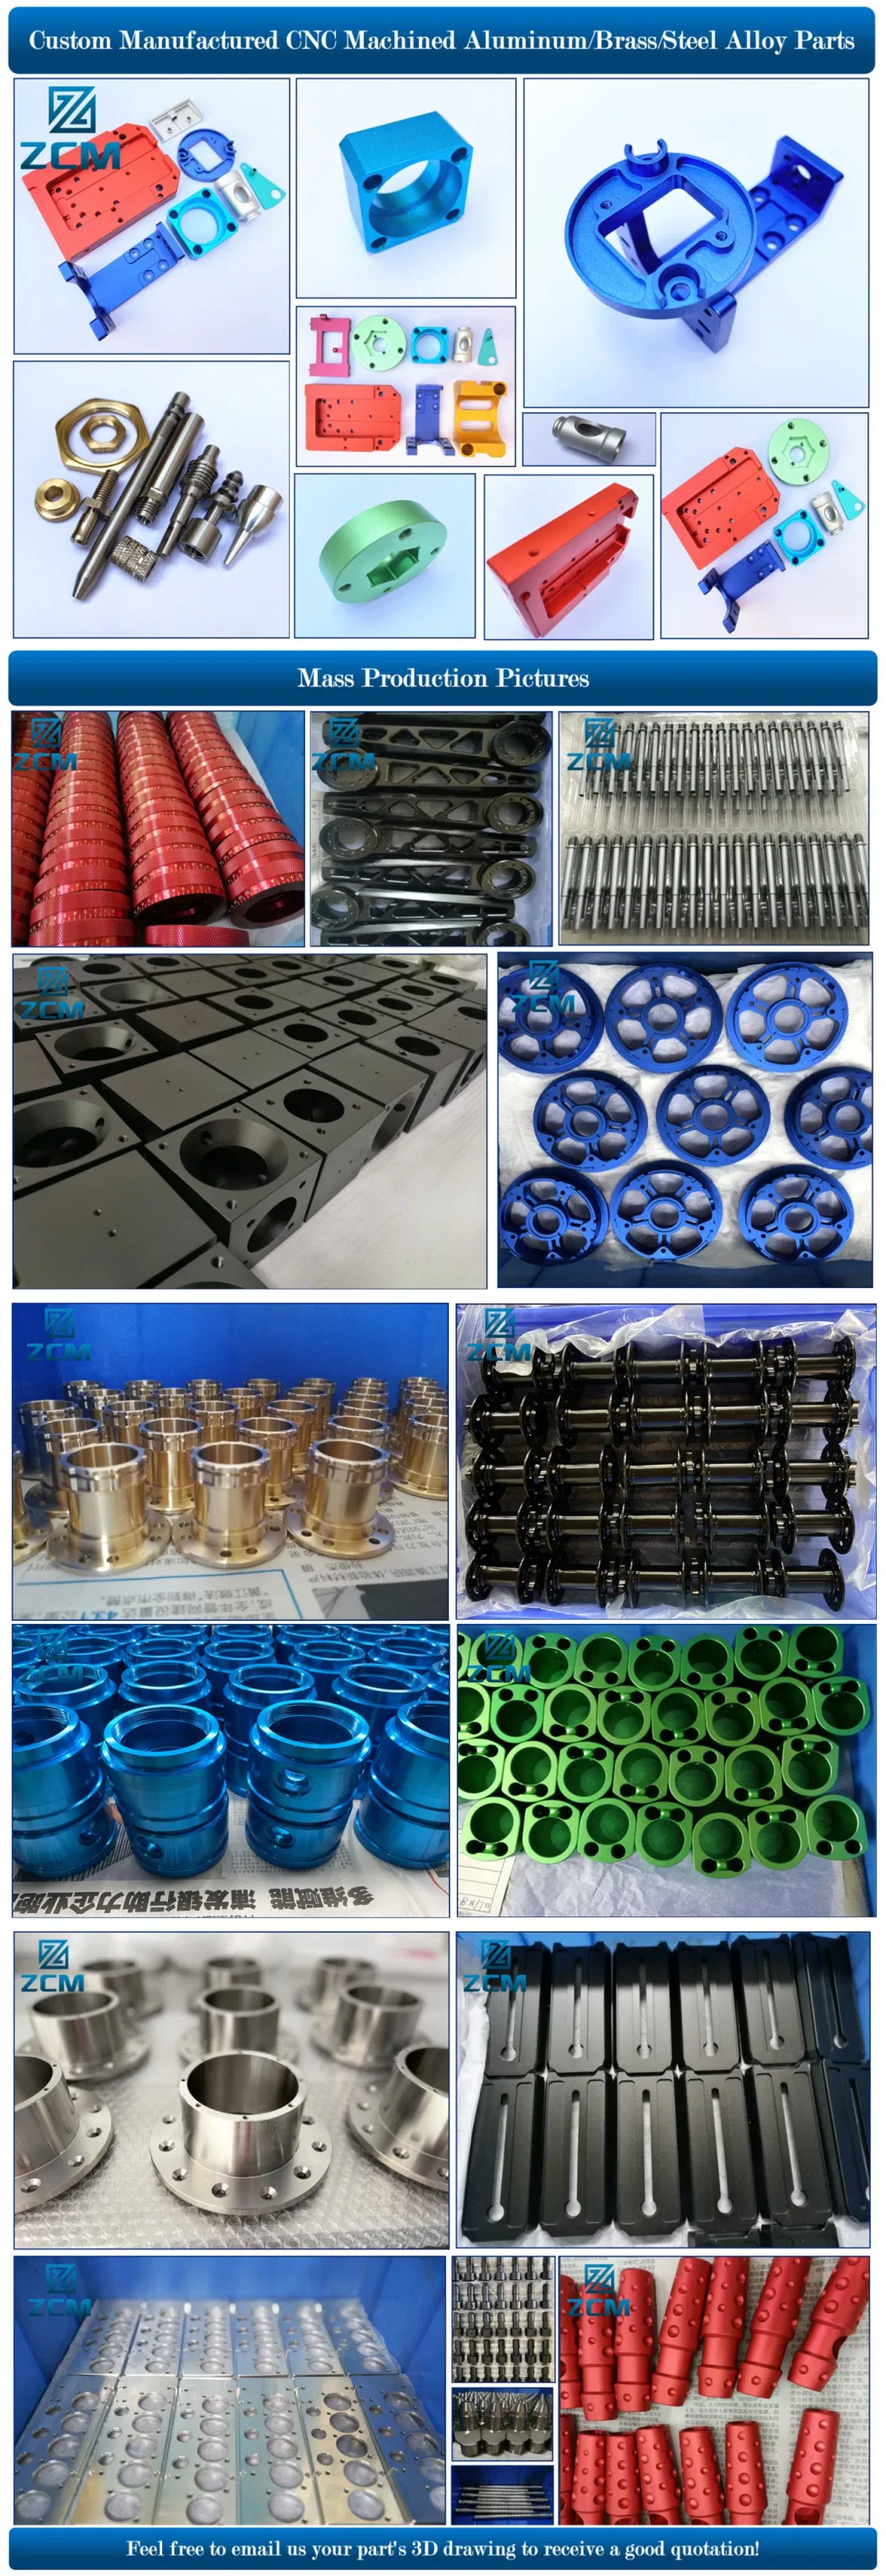 Rapid Prototype Custom Manufactured CNC Metal Precision Aluminum Tester Machine Parts